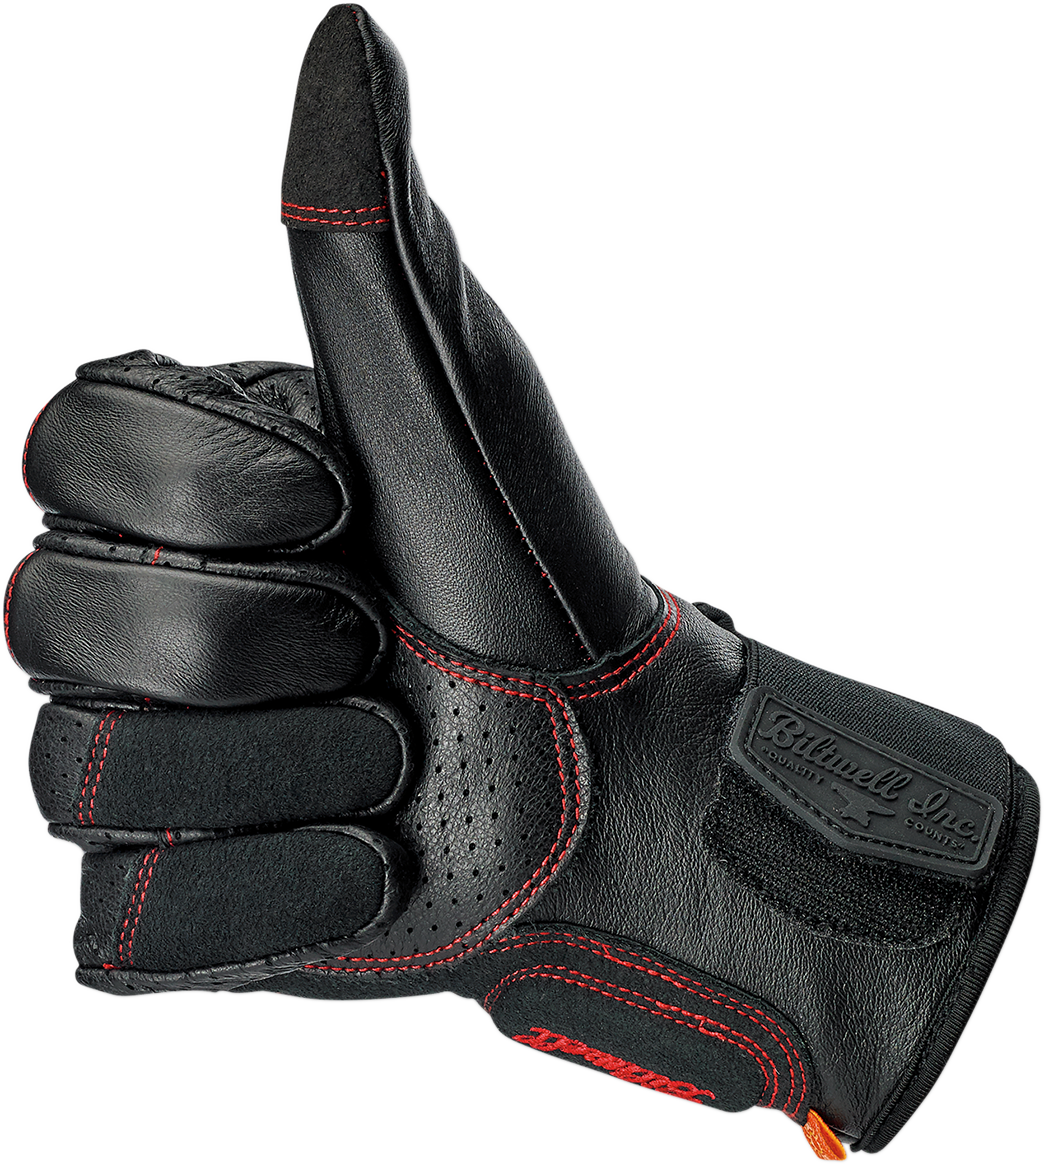 BILTWELL Borrego Gloves - Redline - Large 1506-0108-304